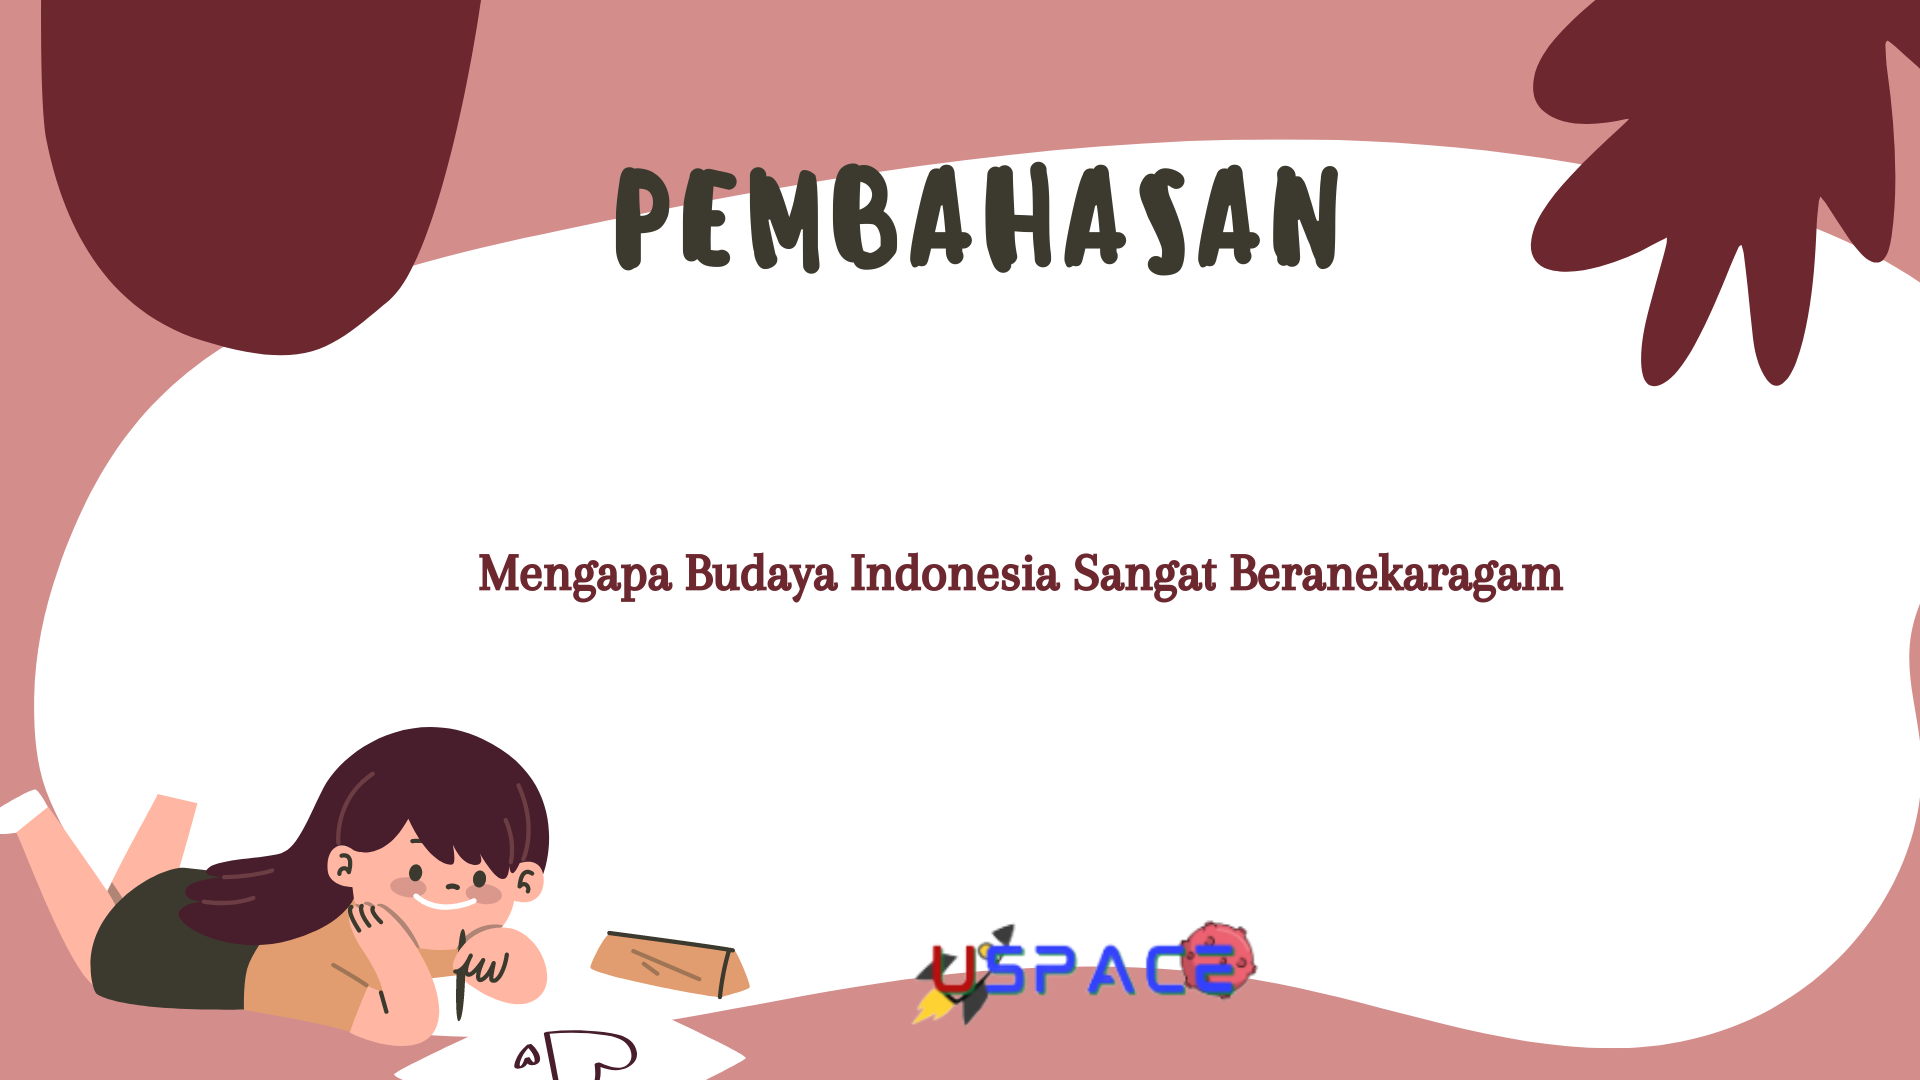 Mengapa Budaya Indonesia Sangat Beranekaragam